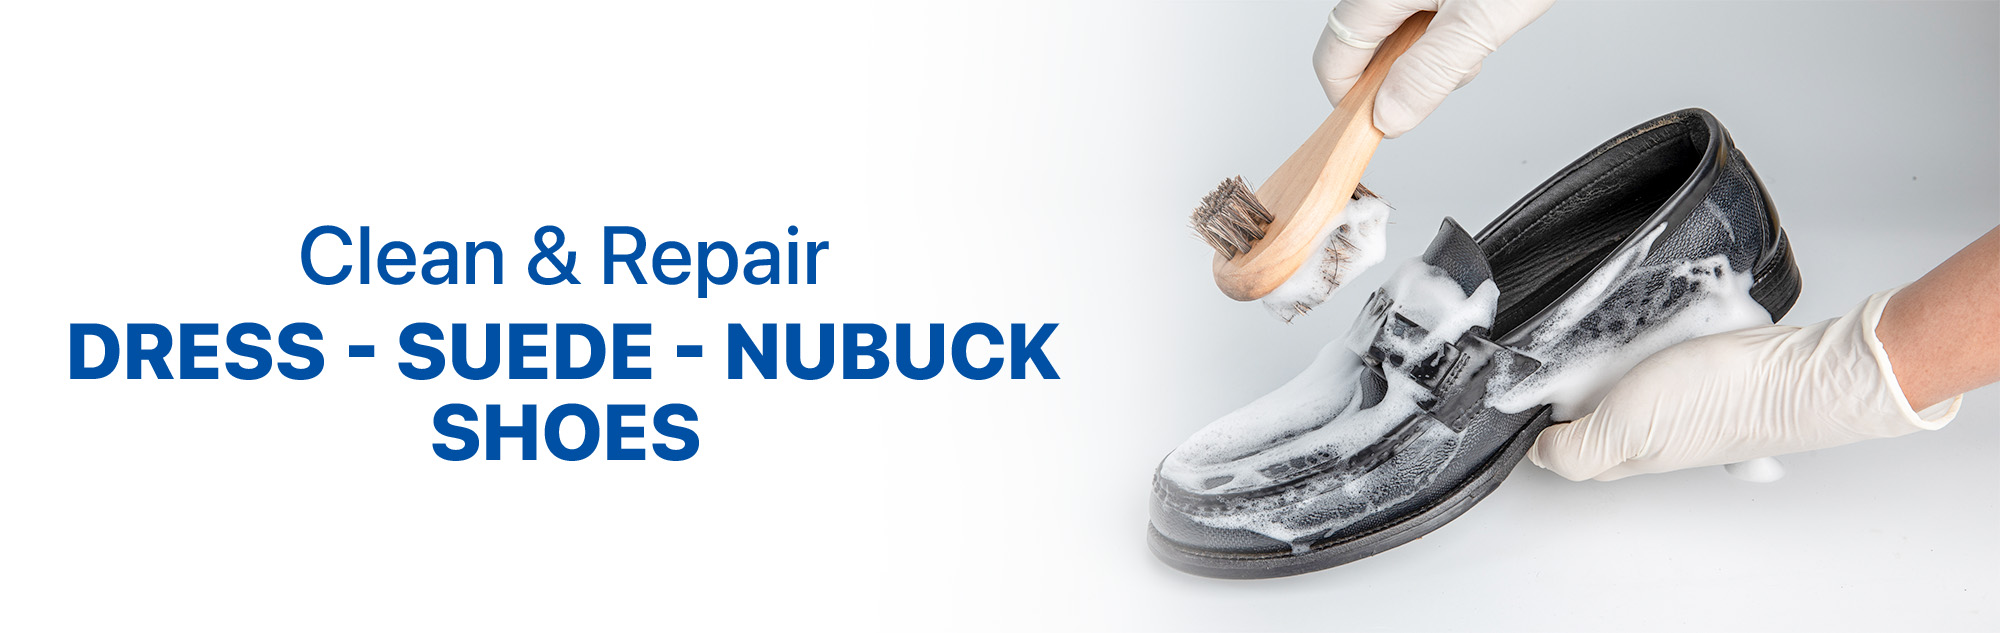 Clean & Repair</br>Dress, Suede, Nubuck shoes